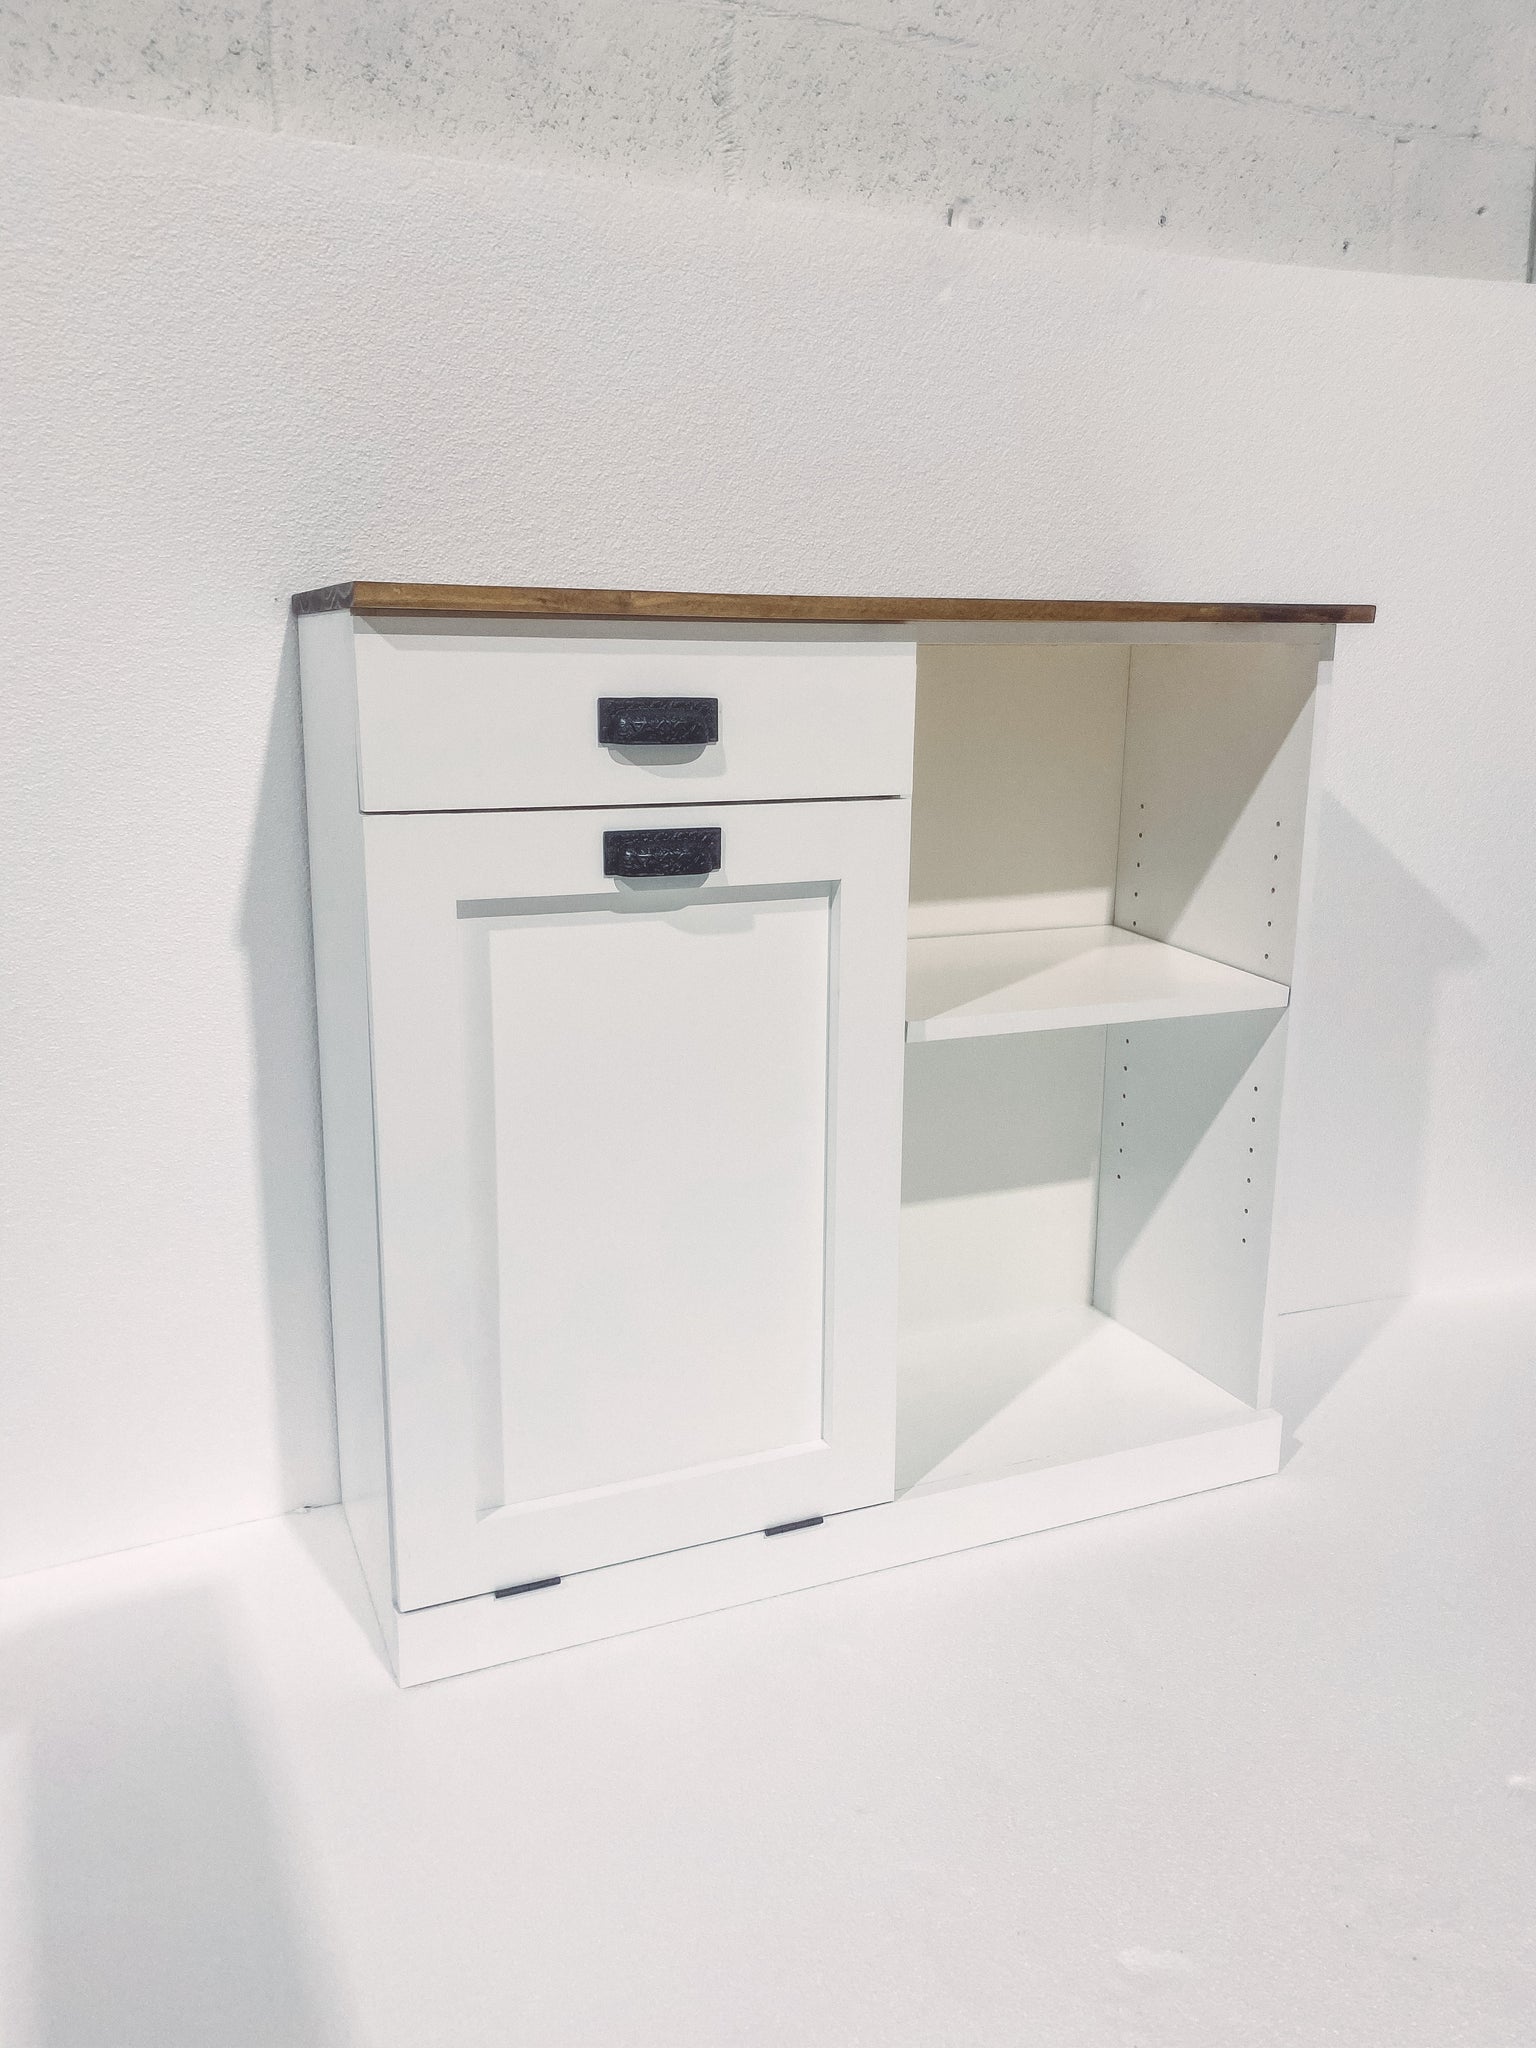 Trash Bin Cabinet with Shelf and Drawer, Trash Can Cabinet, Tilt